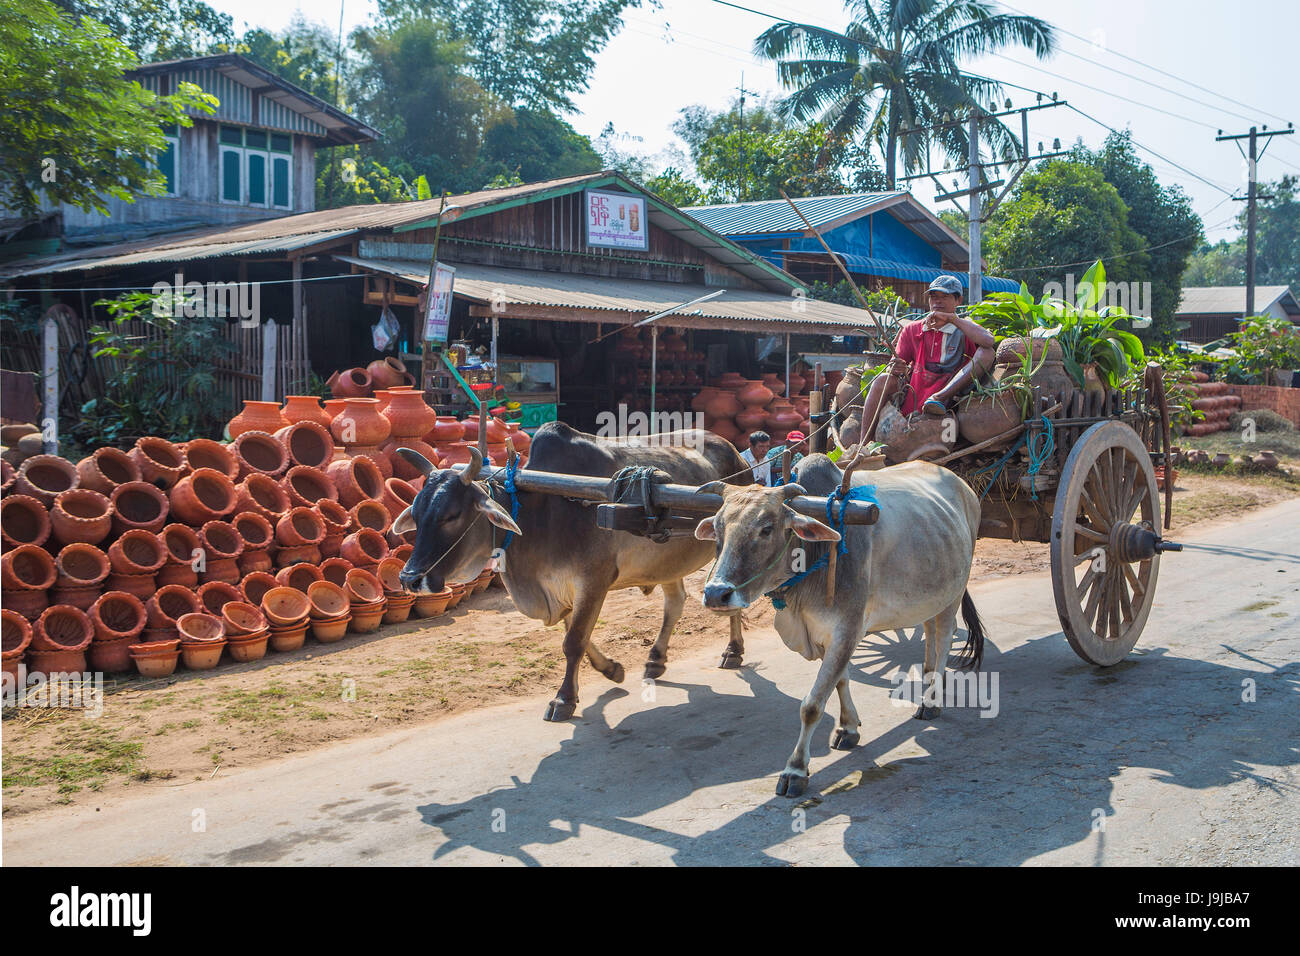 Le Myanmar, province de Pegu, côté route et voiture magasin de poterie traditionnelle Banque D'Images